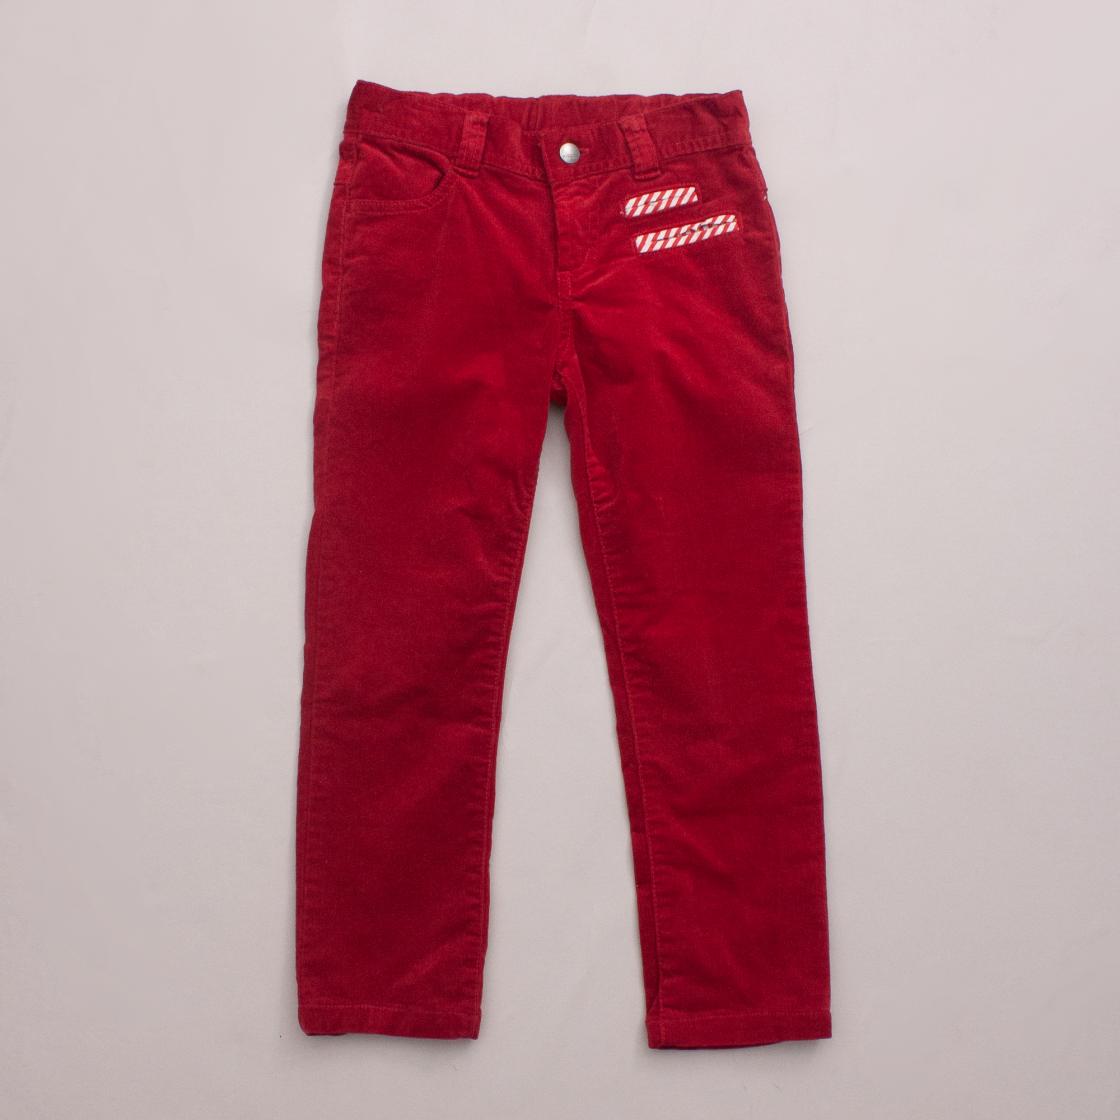 Sooki Red Corduroy Jeans